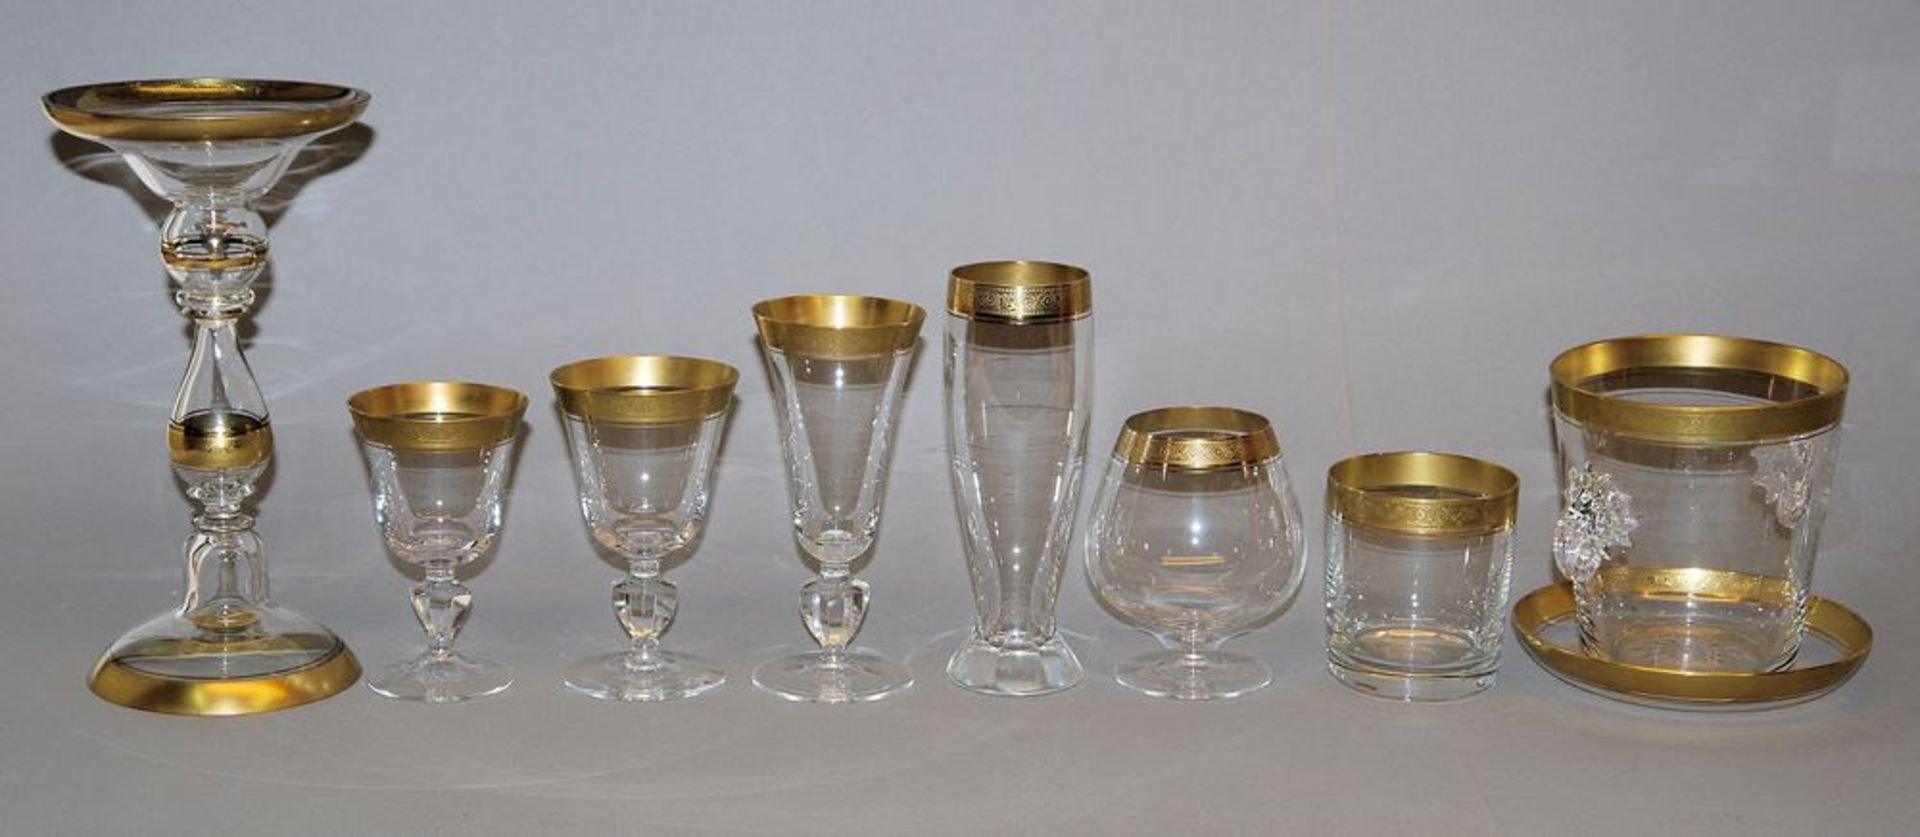 Umfangreiche Gläser-Sammlung Marlowe Minton mit Goldrand, Kristallglasmanufaktur Theresienthal